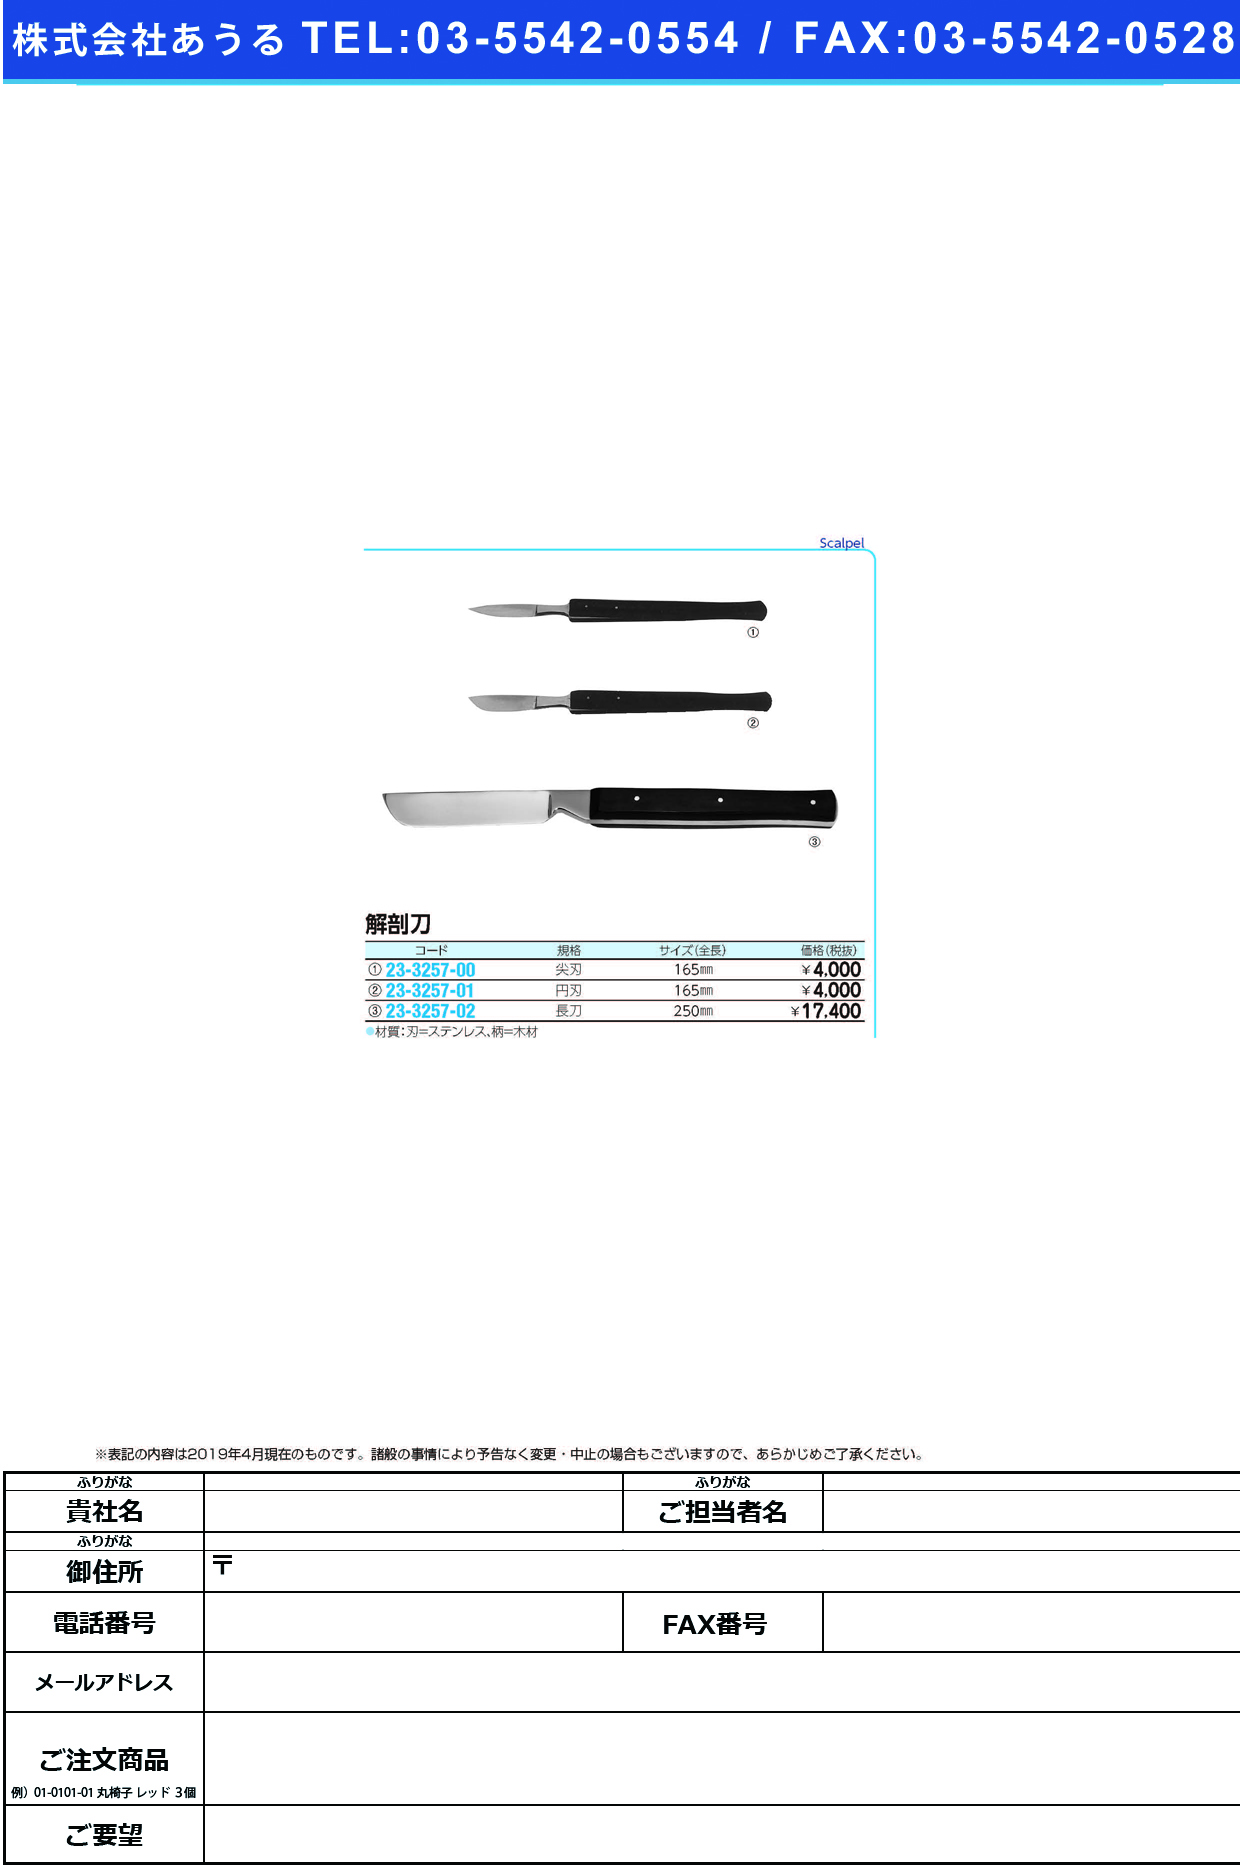 (23-3257-01)解剖円刃刀 TKZ-V8110-2 ｶｲﾎﾞｳｴﾝﾊﾞﾄｳ【1本単位】【2019年カタログ商品】